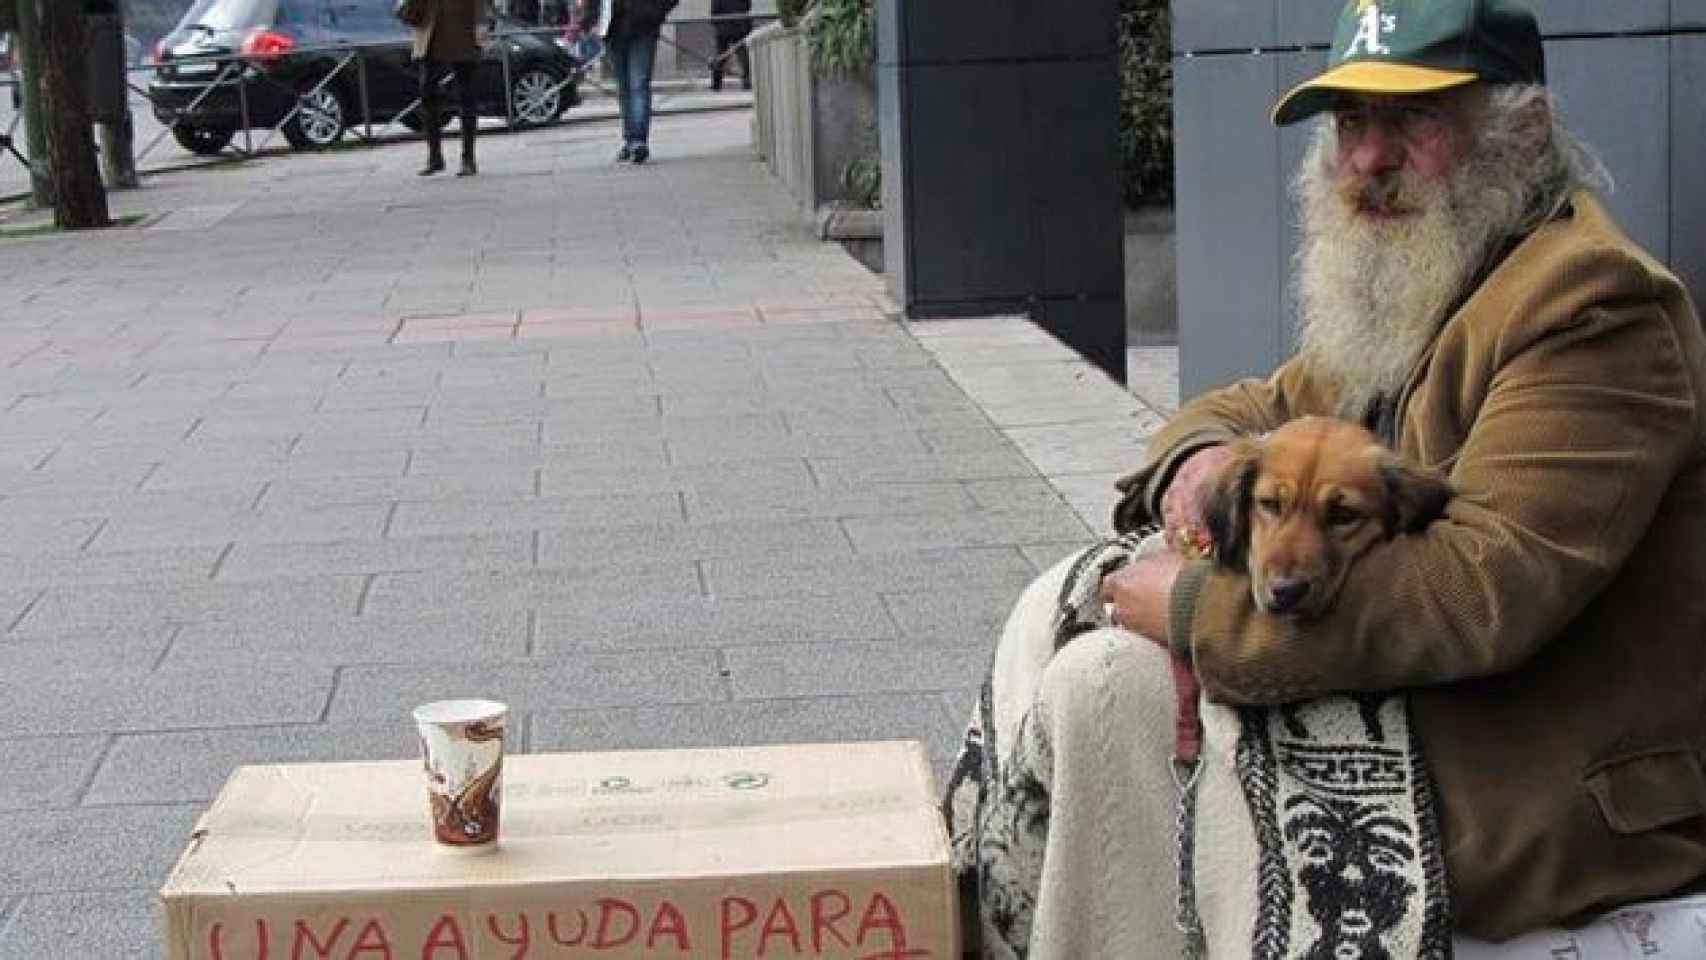 Un indigente pide limosna en una calle de Barcelona / CG